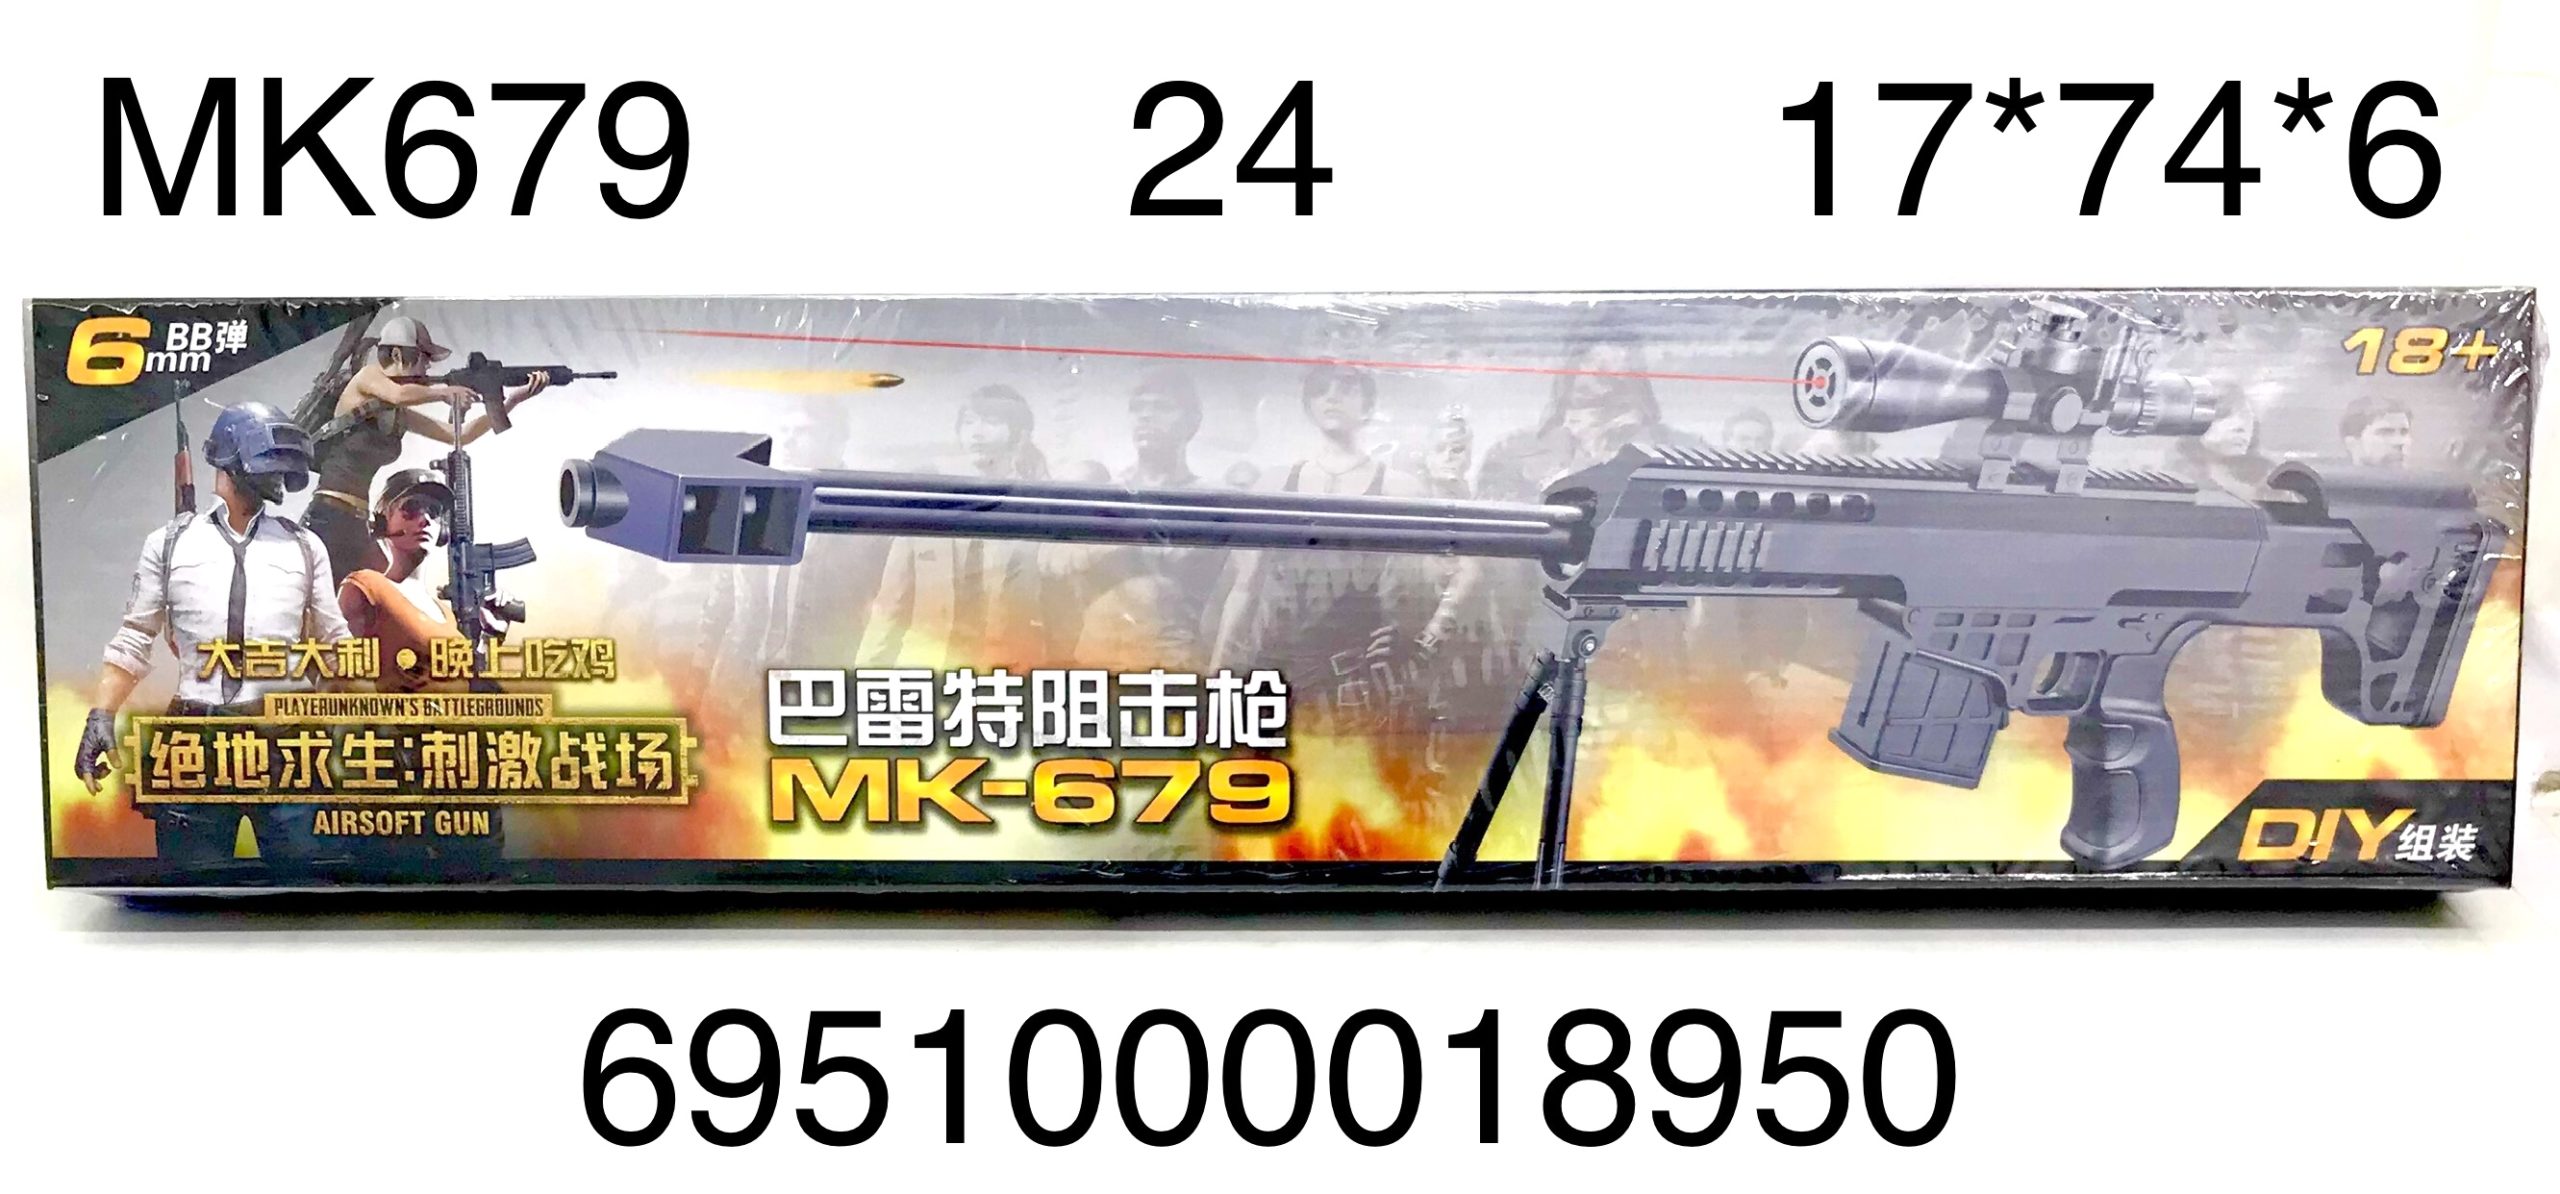 Оружие МК679 с лазерным прицелом - Пермь 